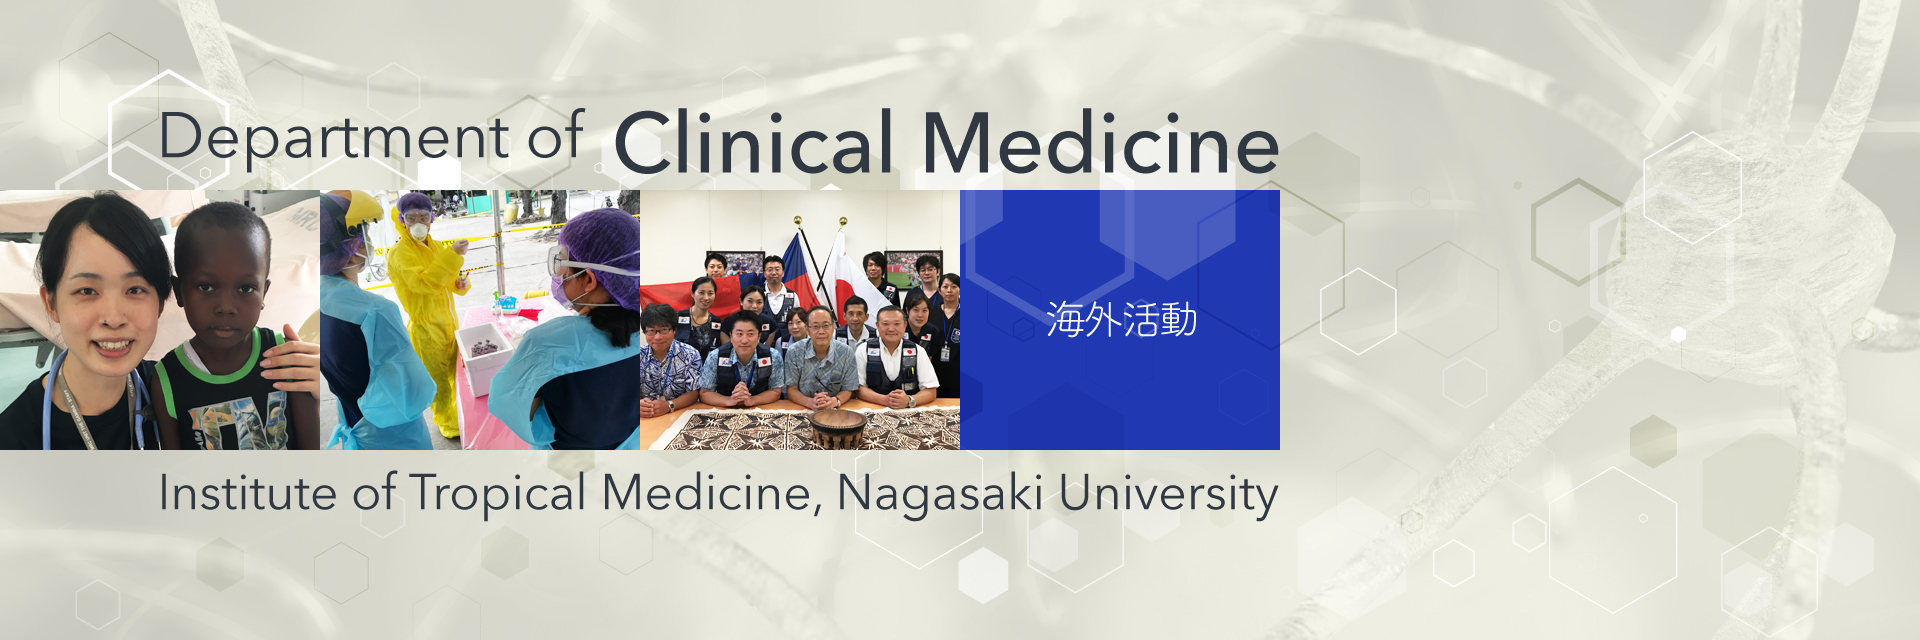 海外活動：Department of Clinical Medicine, Institute of Tropical Medicine, Nagasaki University